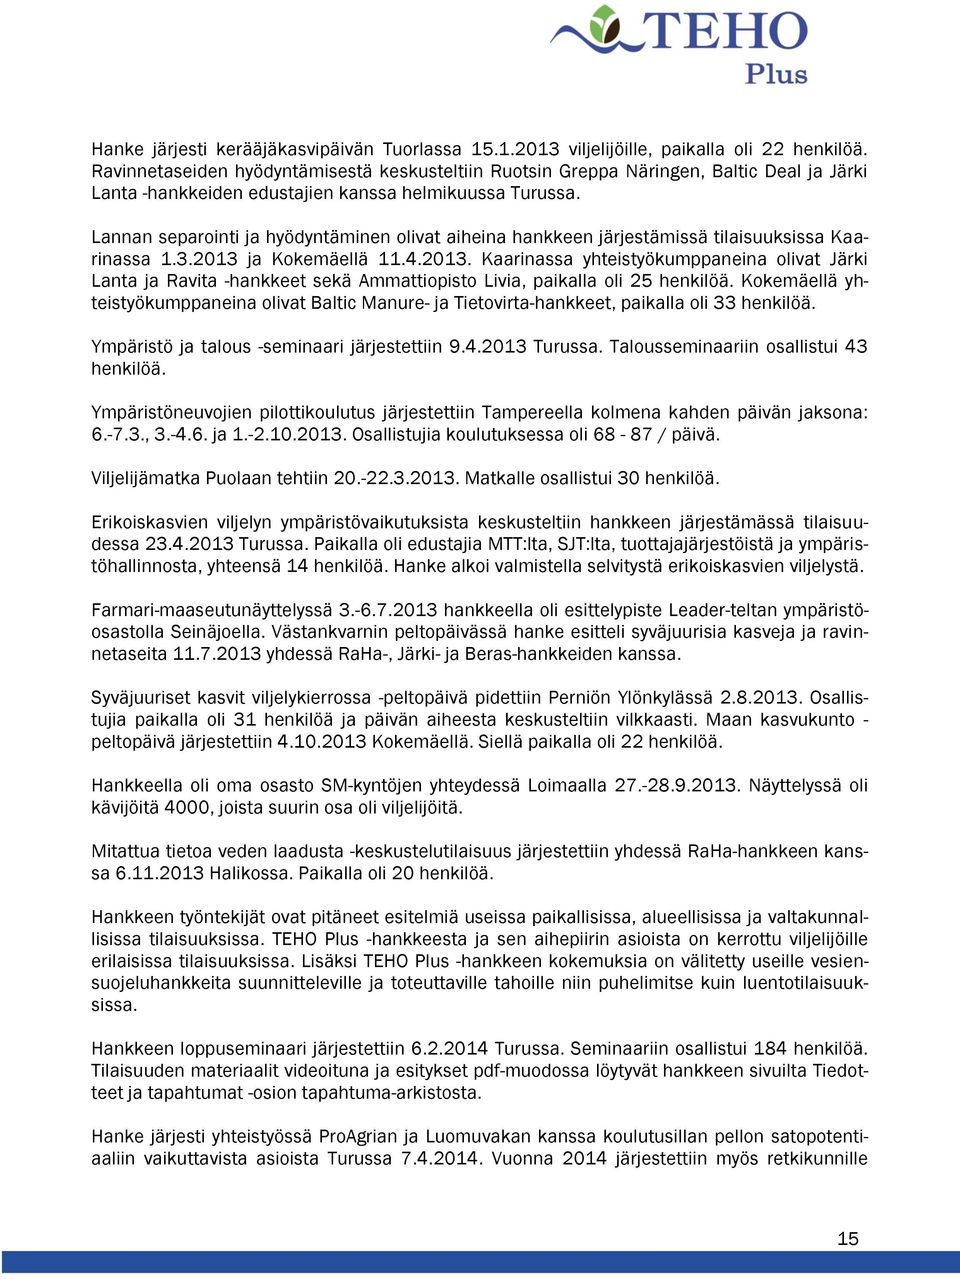 Lannan separointi ja hyödyntäminen olivat aiheina hankkeen järjestämissä tilaisuuksissa Kaarinassa 1.3.2013 